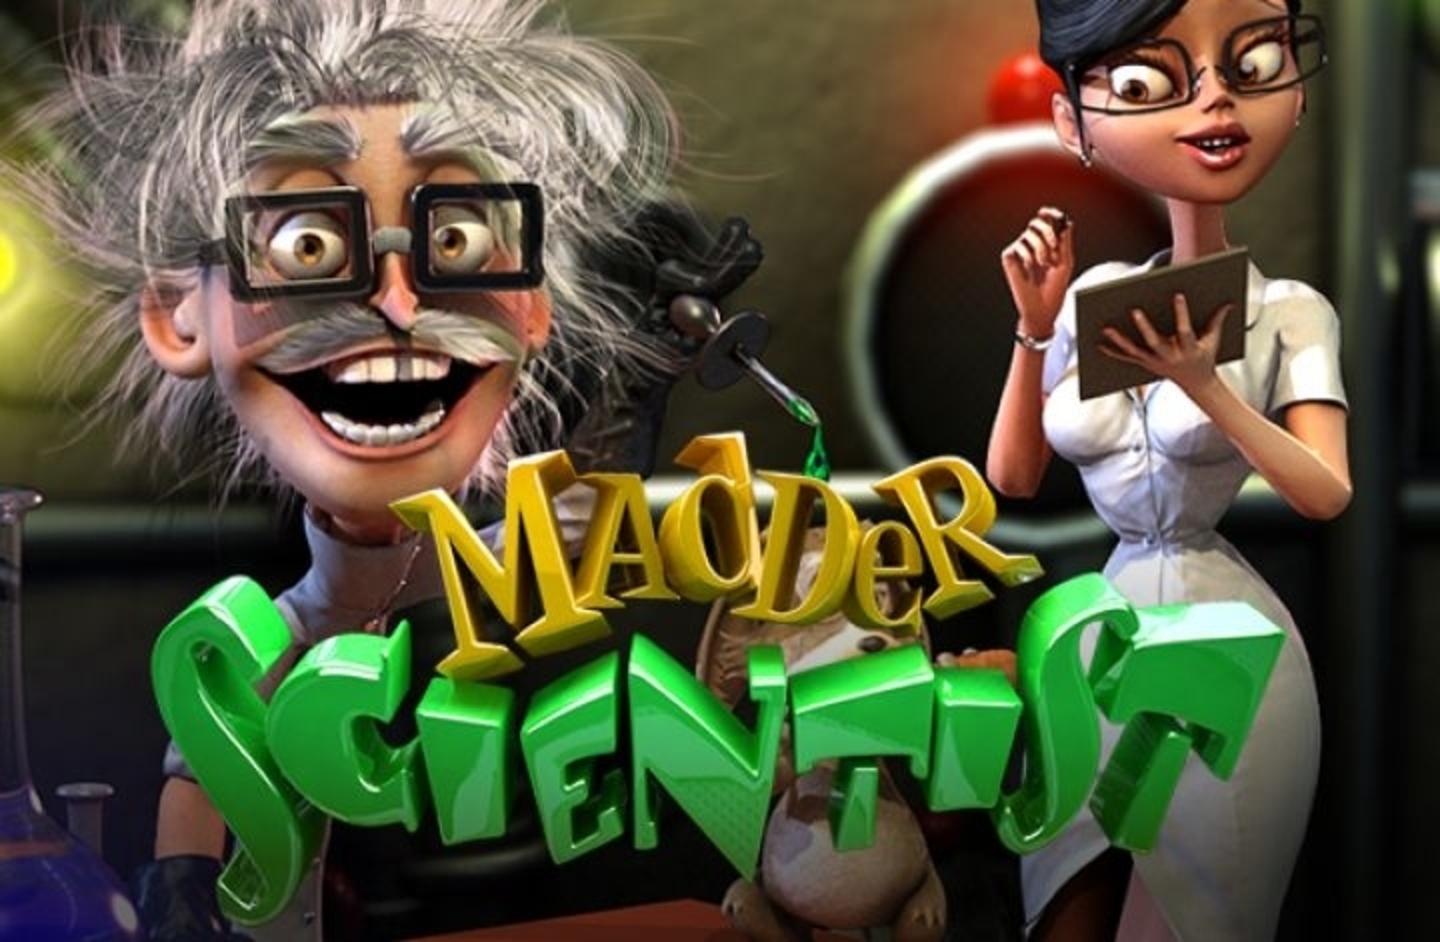 Madder Scientist